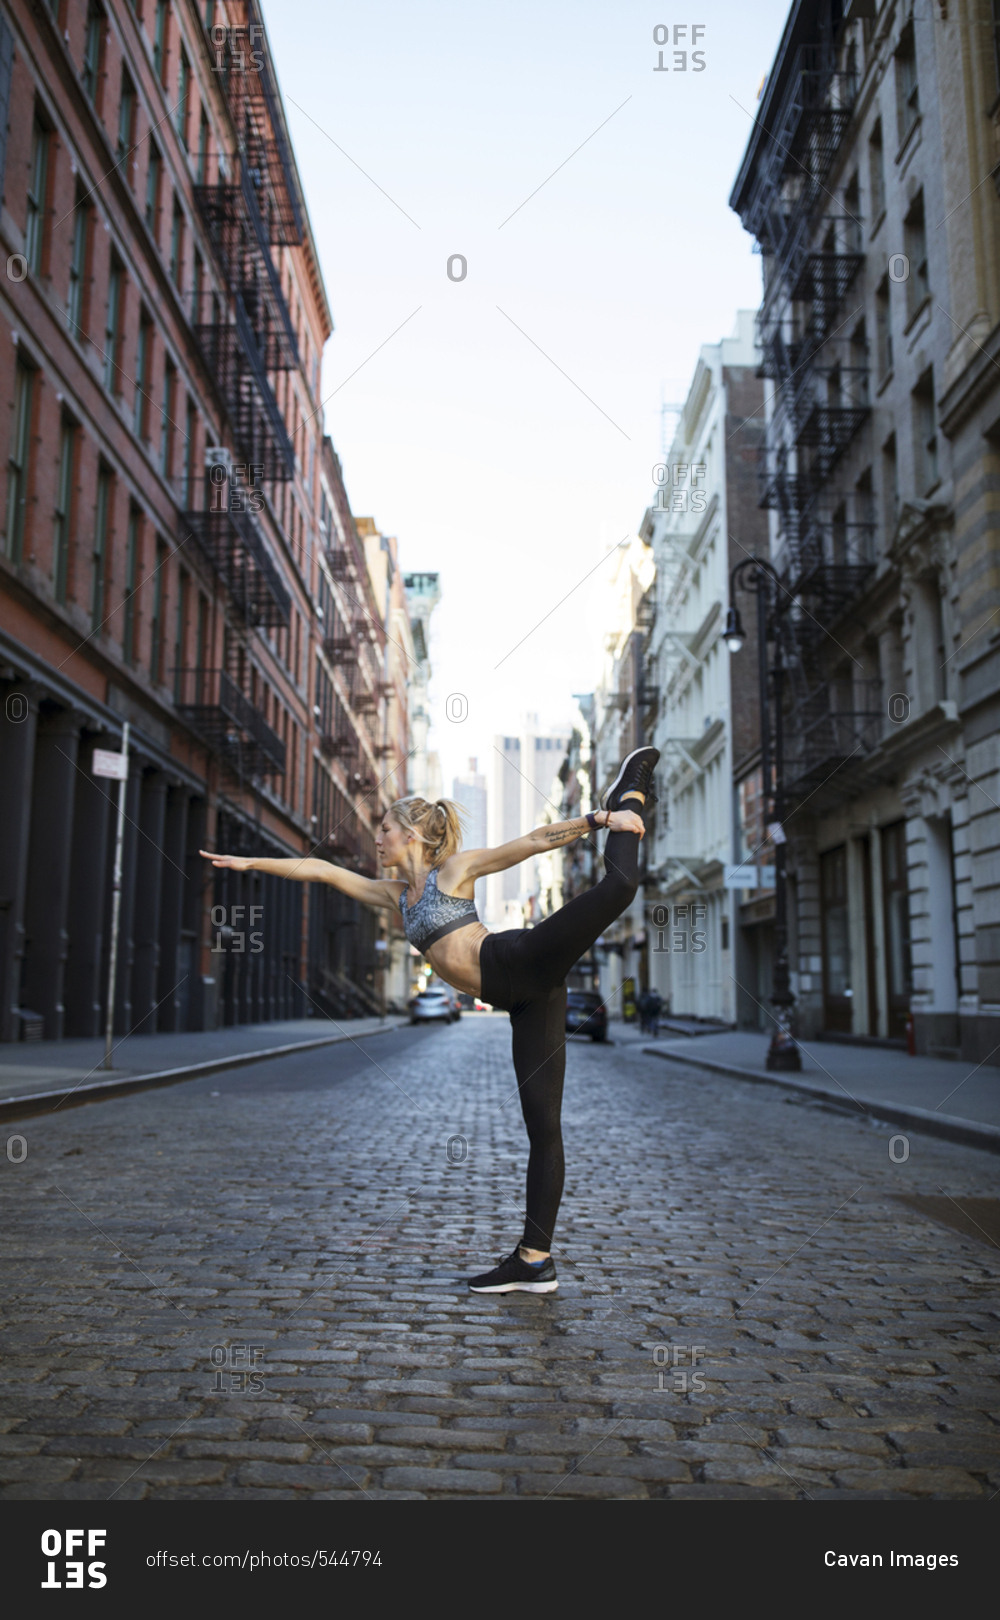 Female athlete exercising on street against sky in city